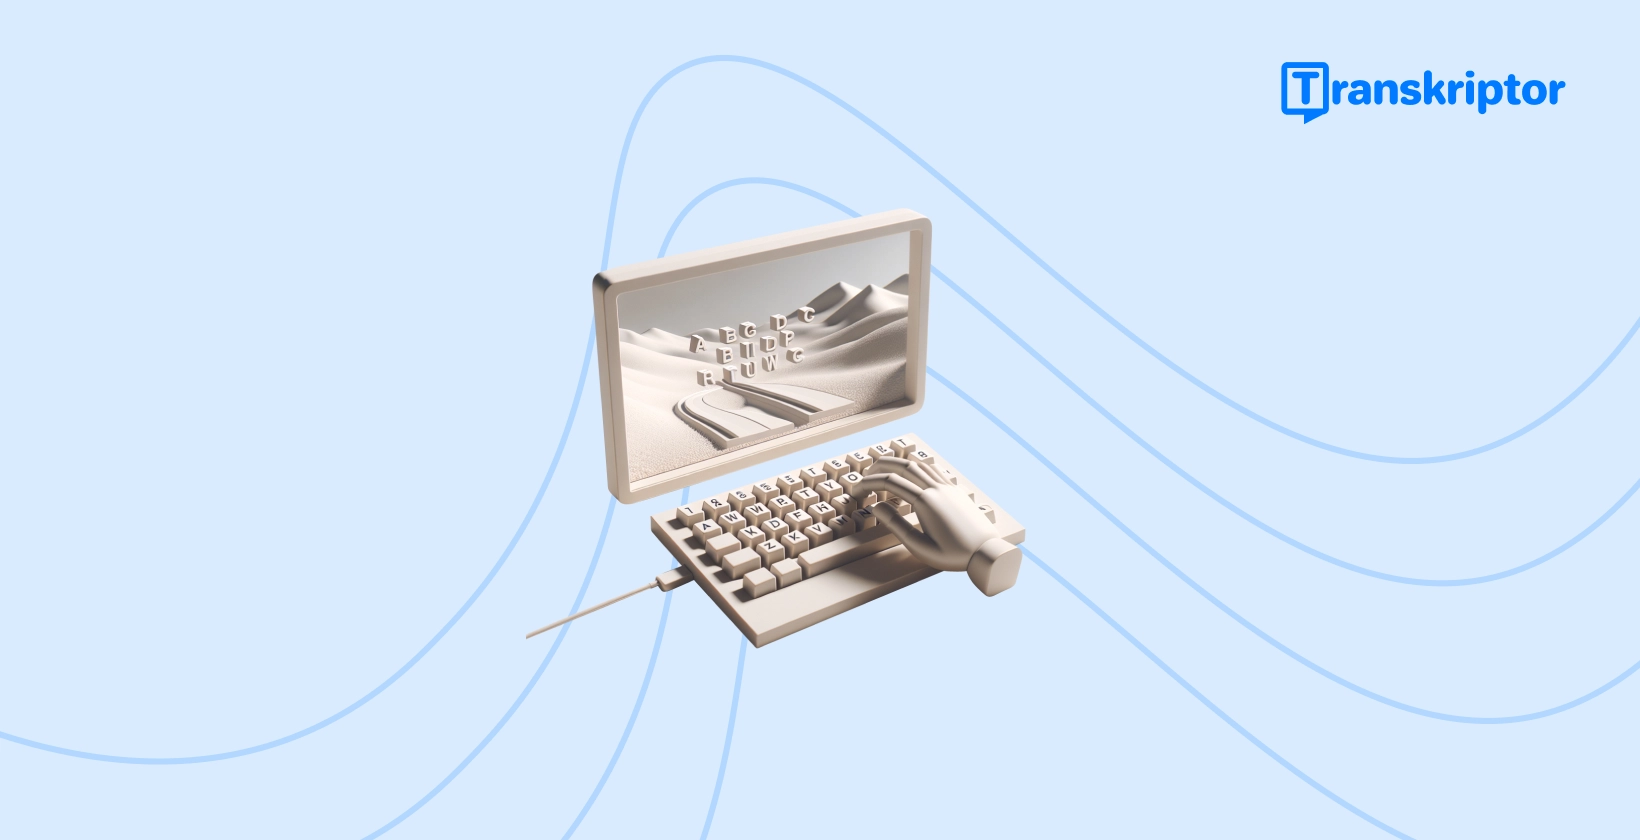 Vintage pisaća mašina sa ključevima koja formira predeo na svojoj papirnoj rolni, predstavlja kreativni proces dodavanja angažovanih natpisa TikTok video zapisima.